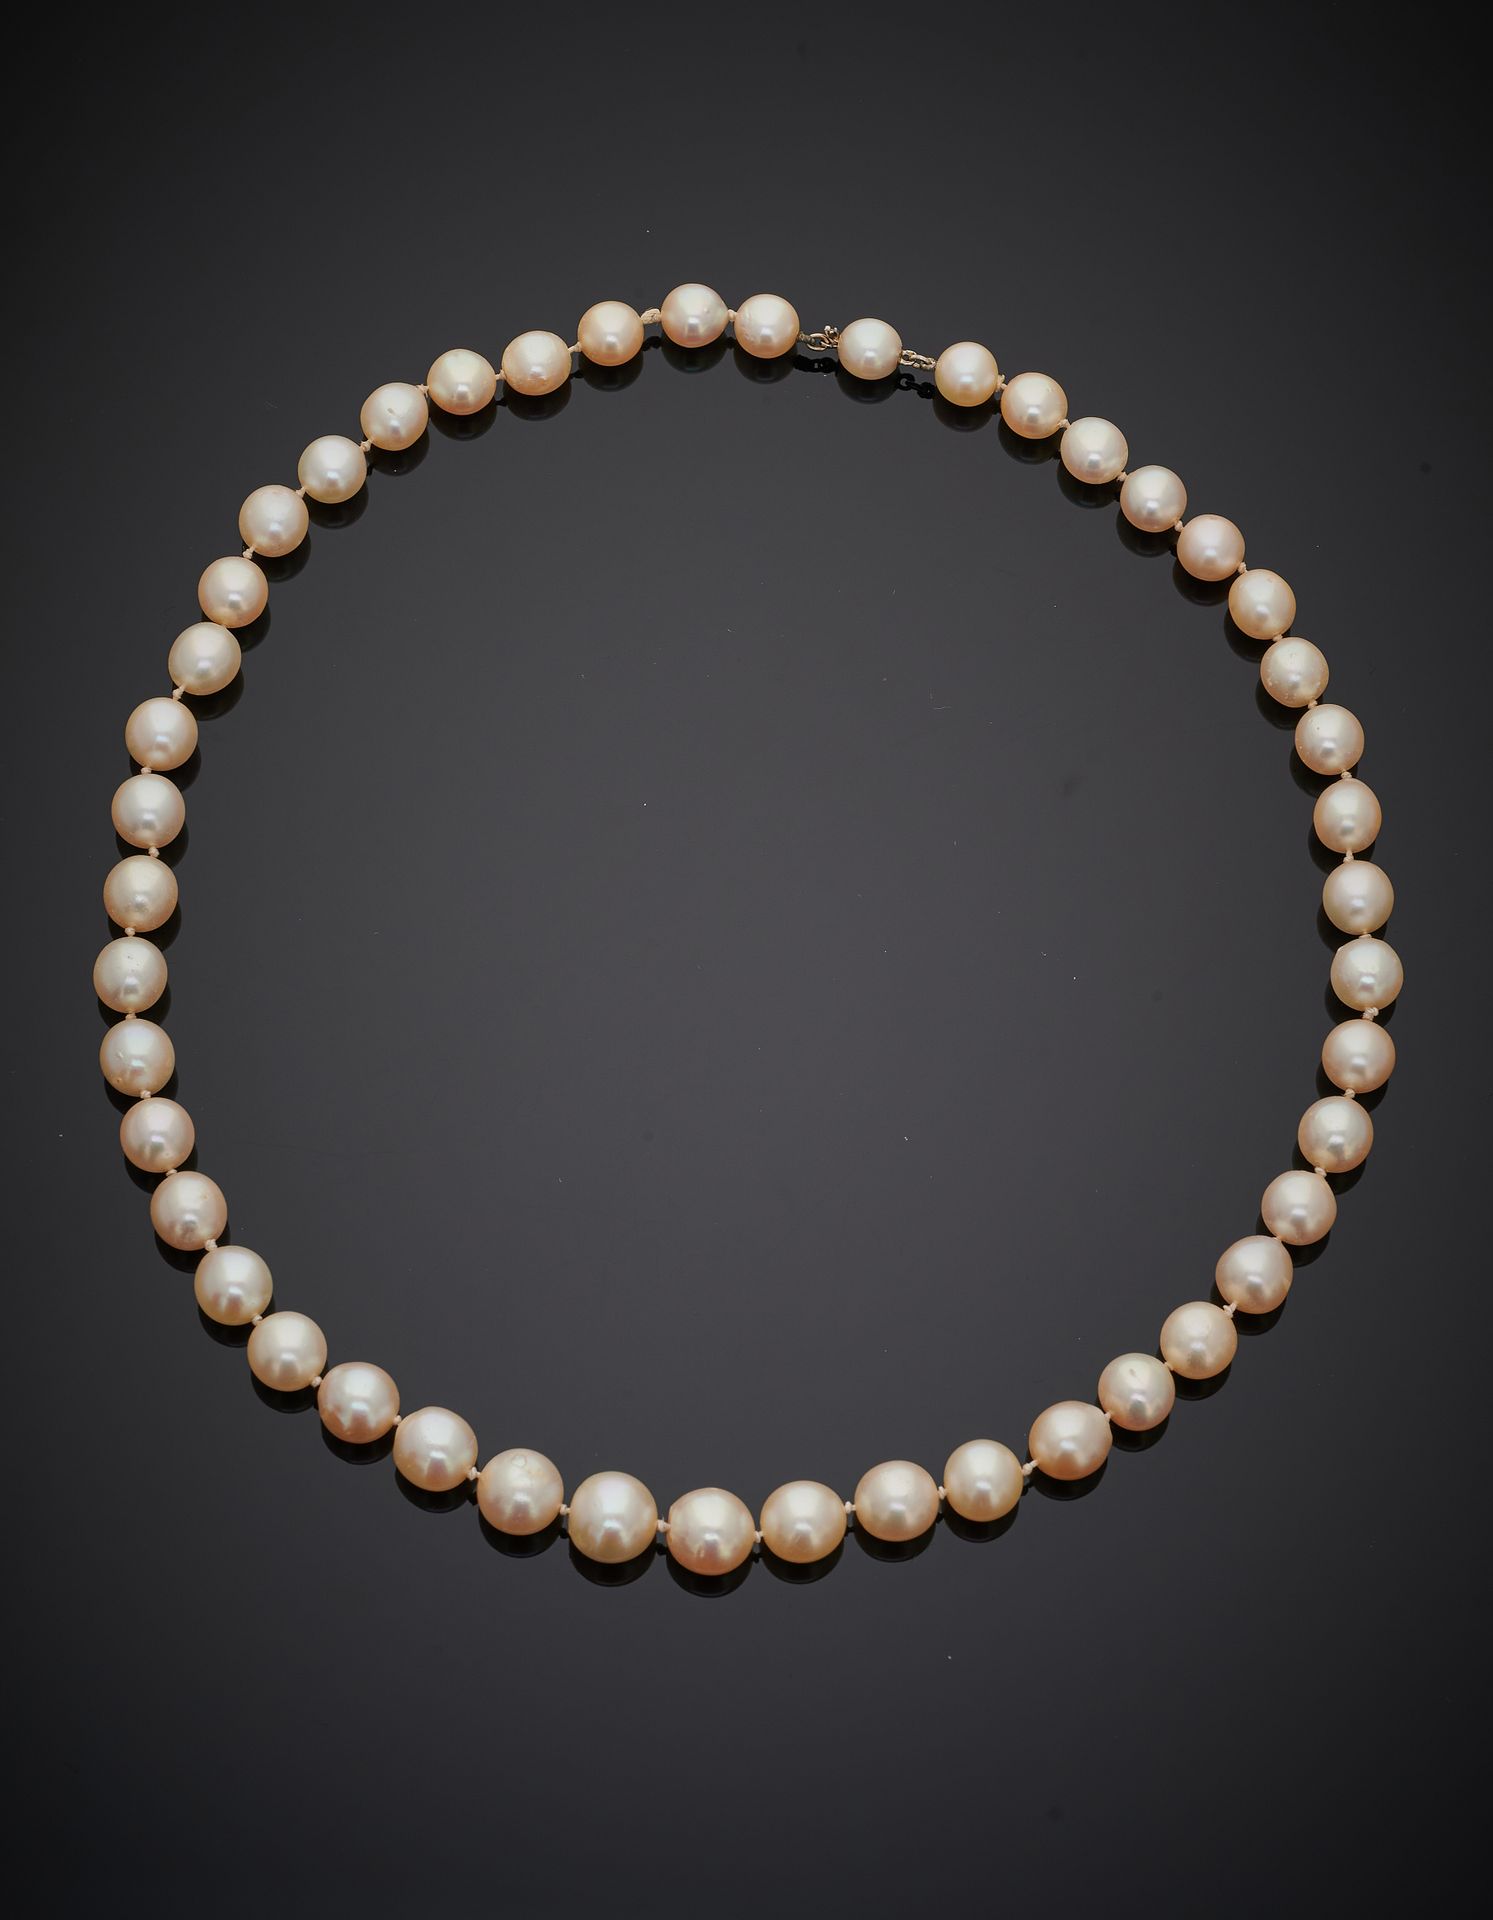 Null 由一排养殖珍珠组成的颈链。珍珠扣，白金系统（750‰）。 
珍珠的直径：6.8至9.3毫米左右。 
长度：43厘米。毛重：34.5克。